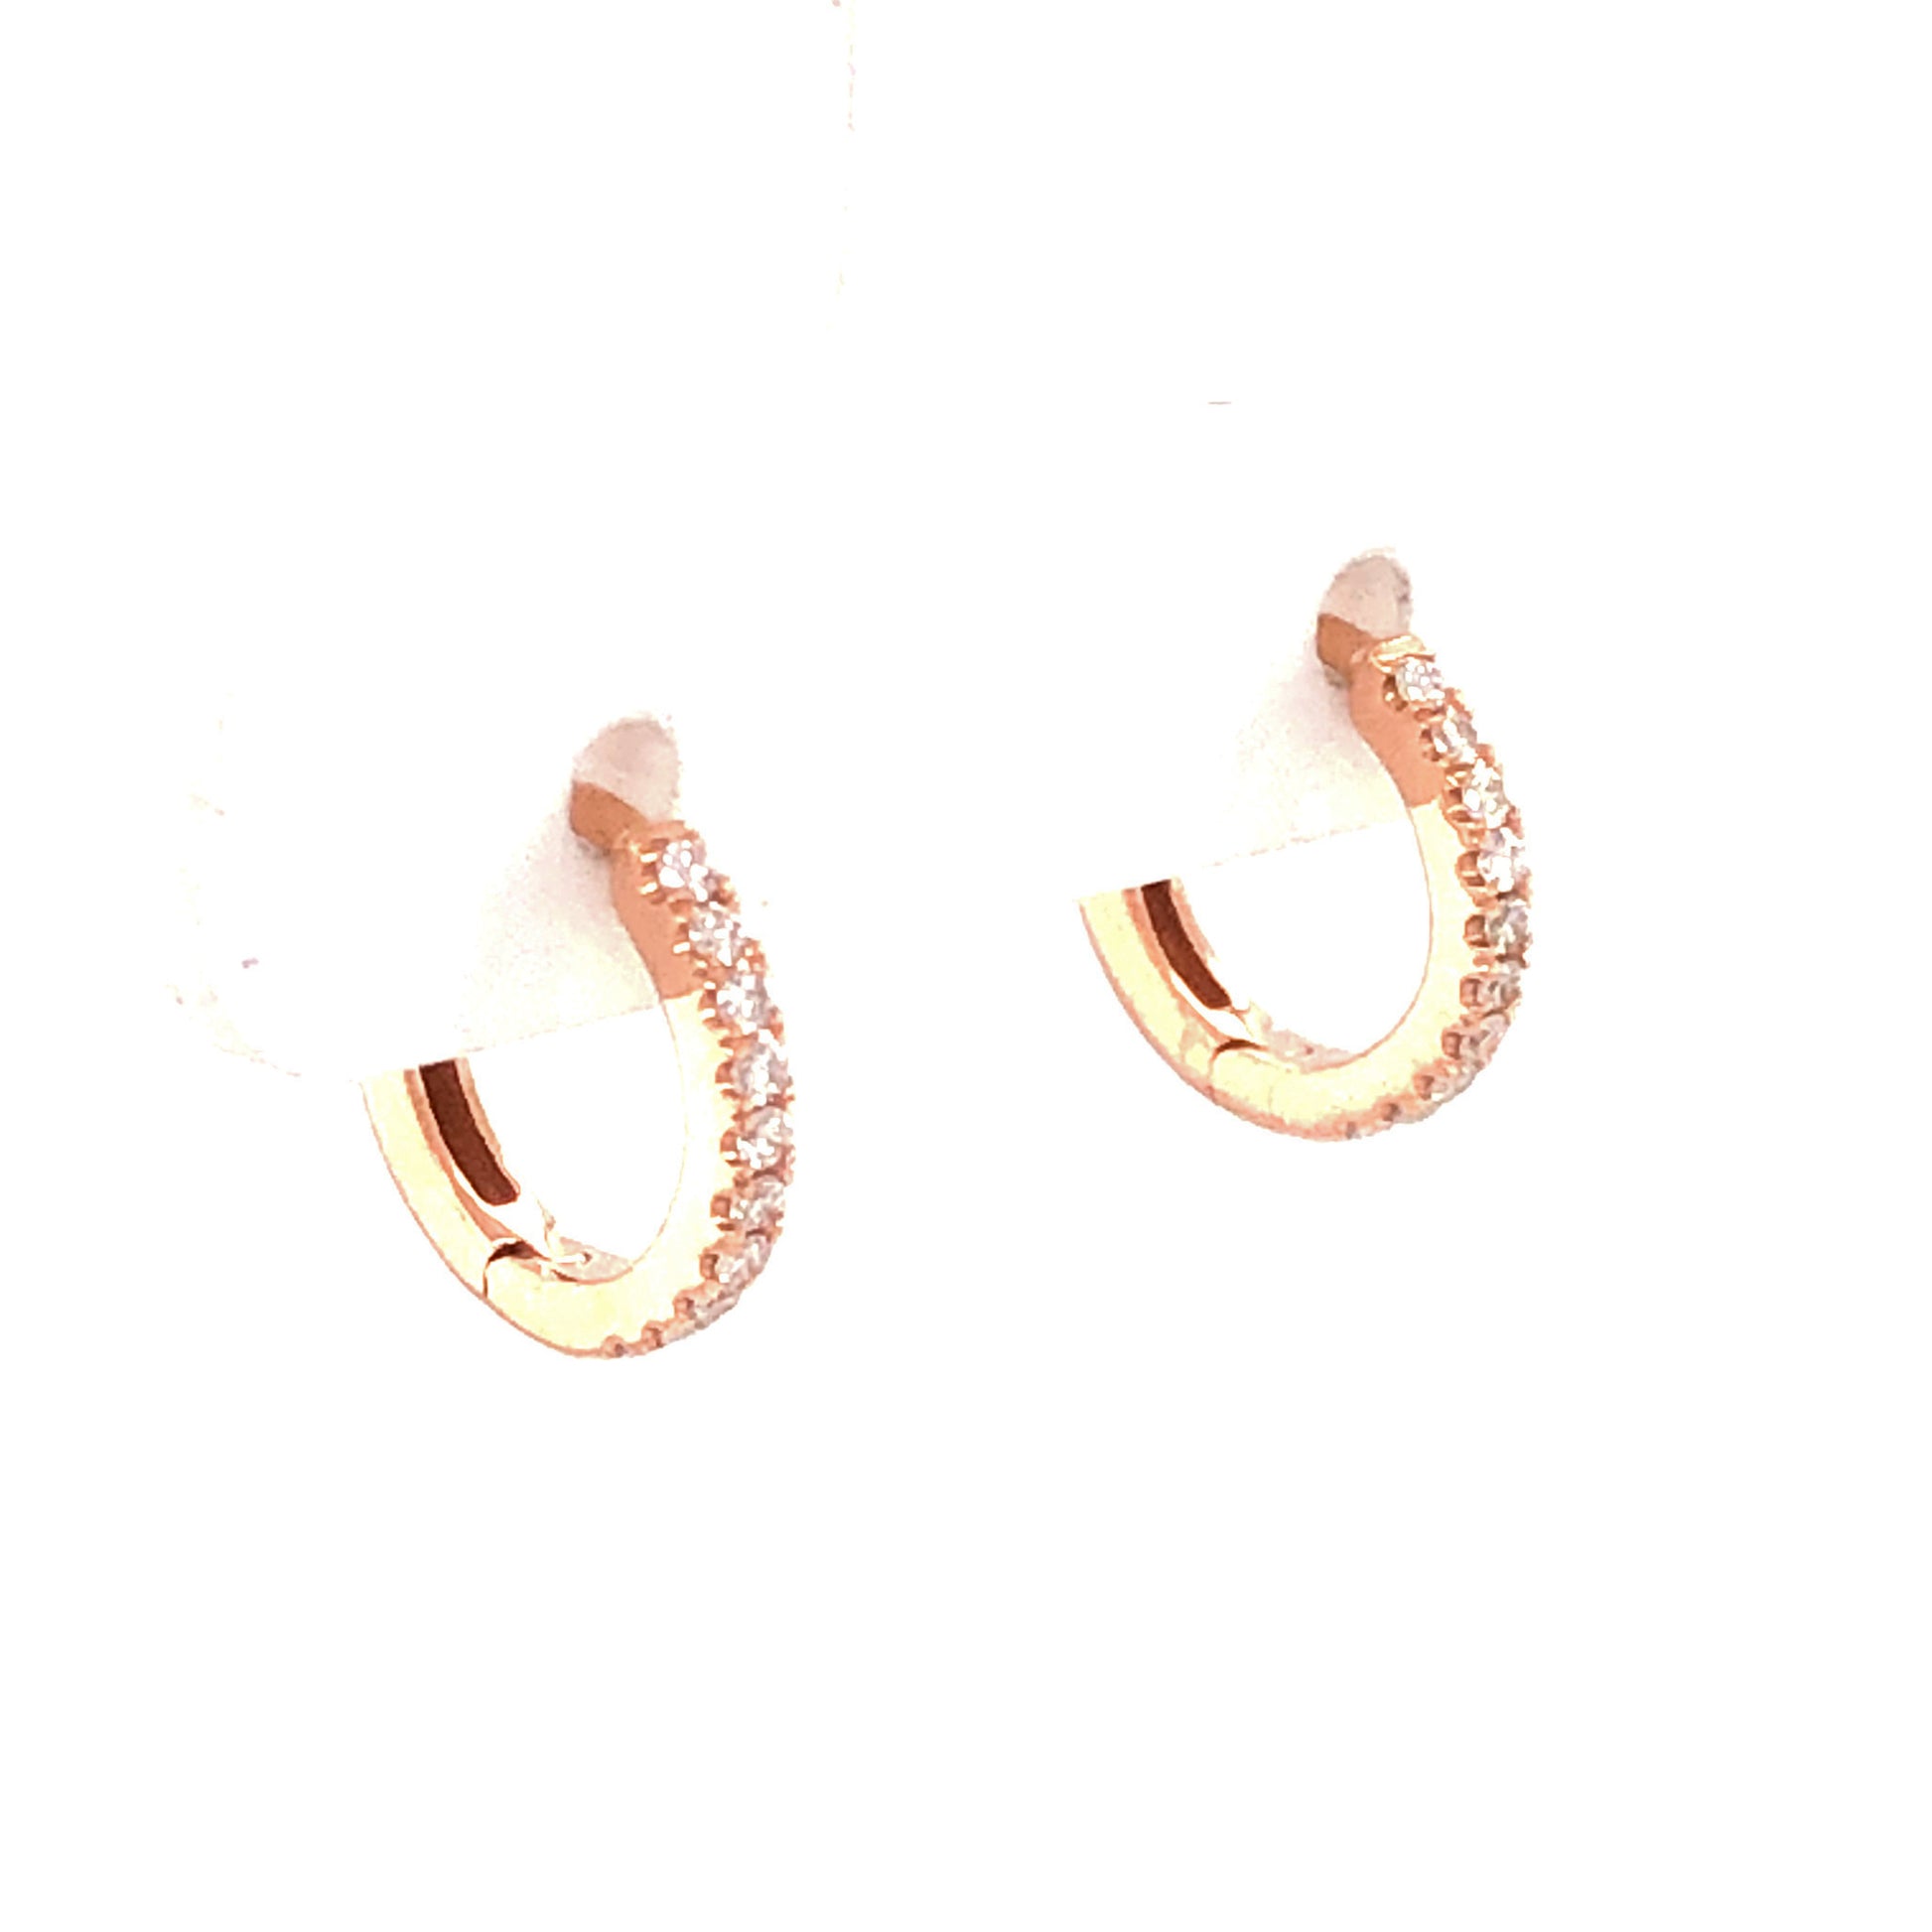 .10 Little Diamond Hoop Earrings in 14k Rose Gold